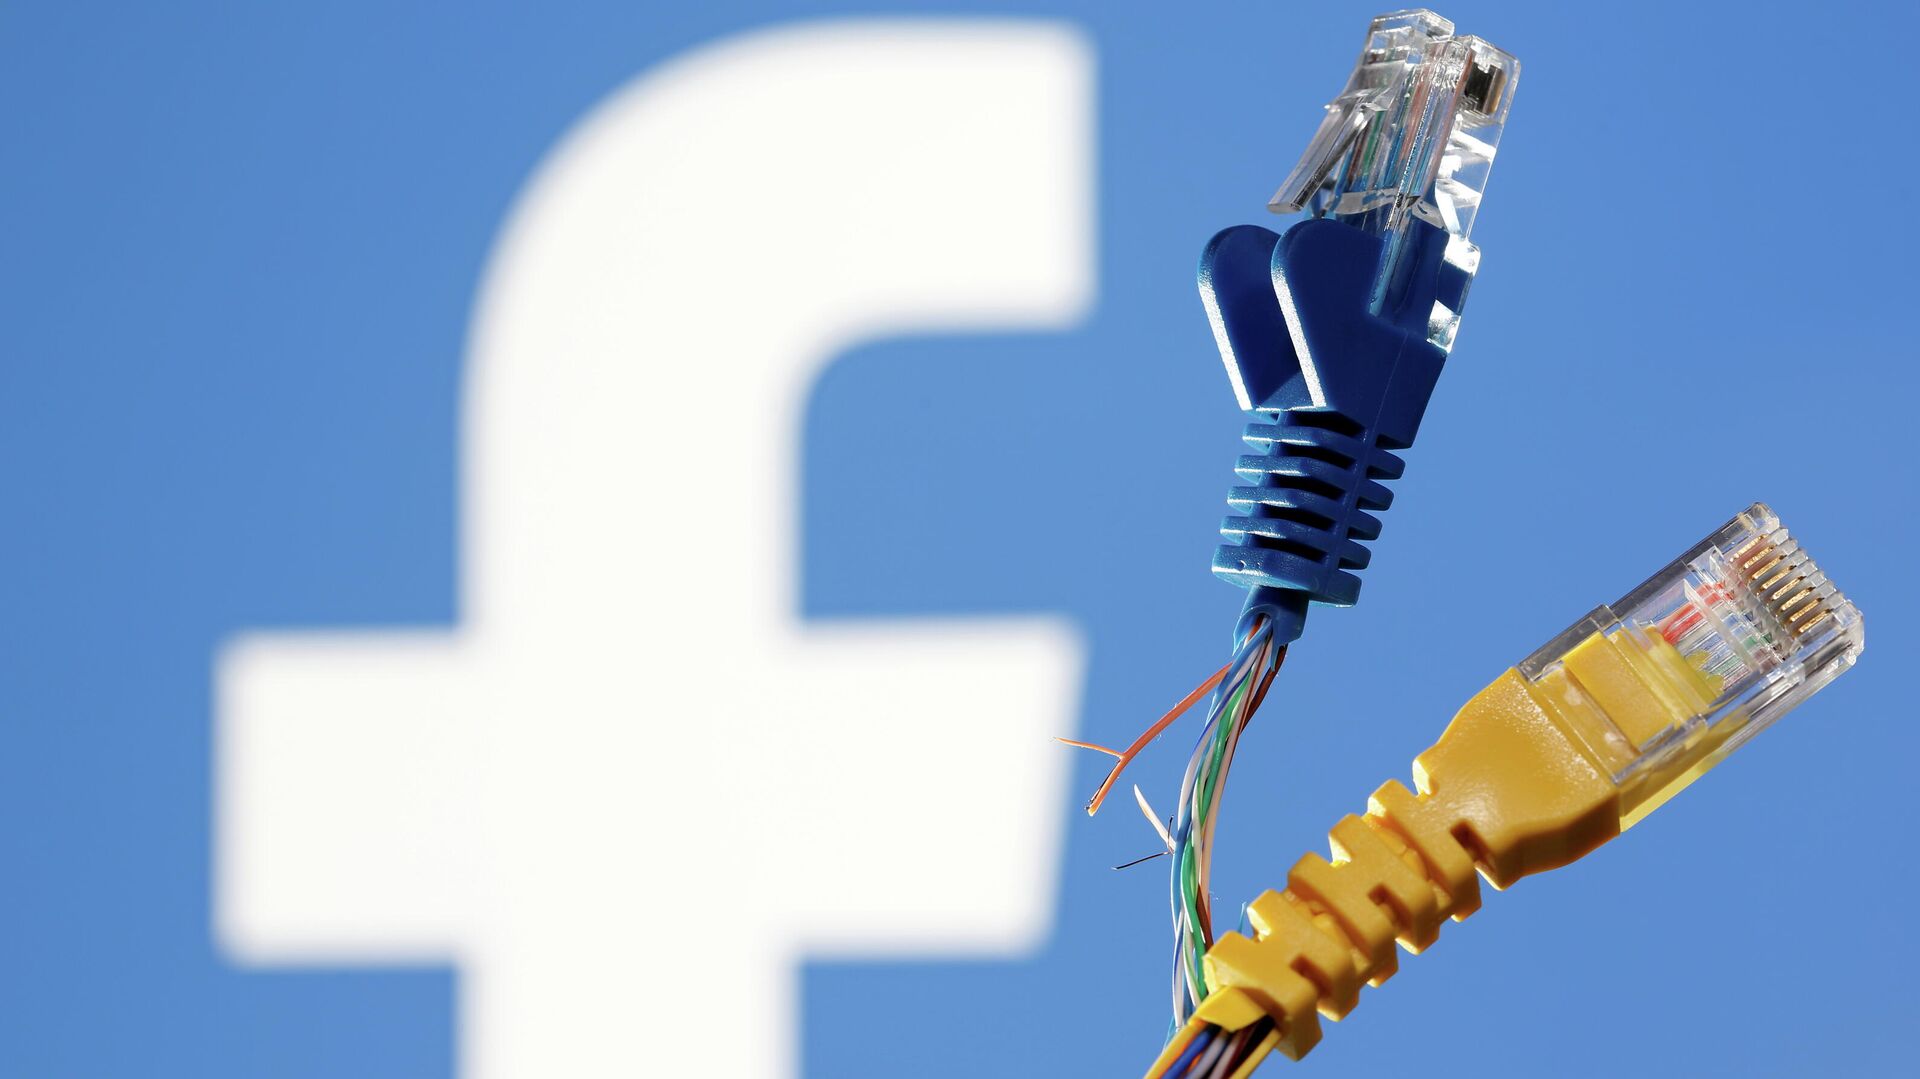 Broken Ethernet cables are seen in front of displayed Facebook logo in this illustration taken October 5, 2021 - Sputnik International, 1920, 12.10.2021